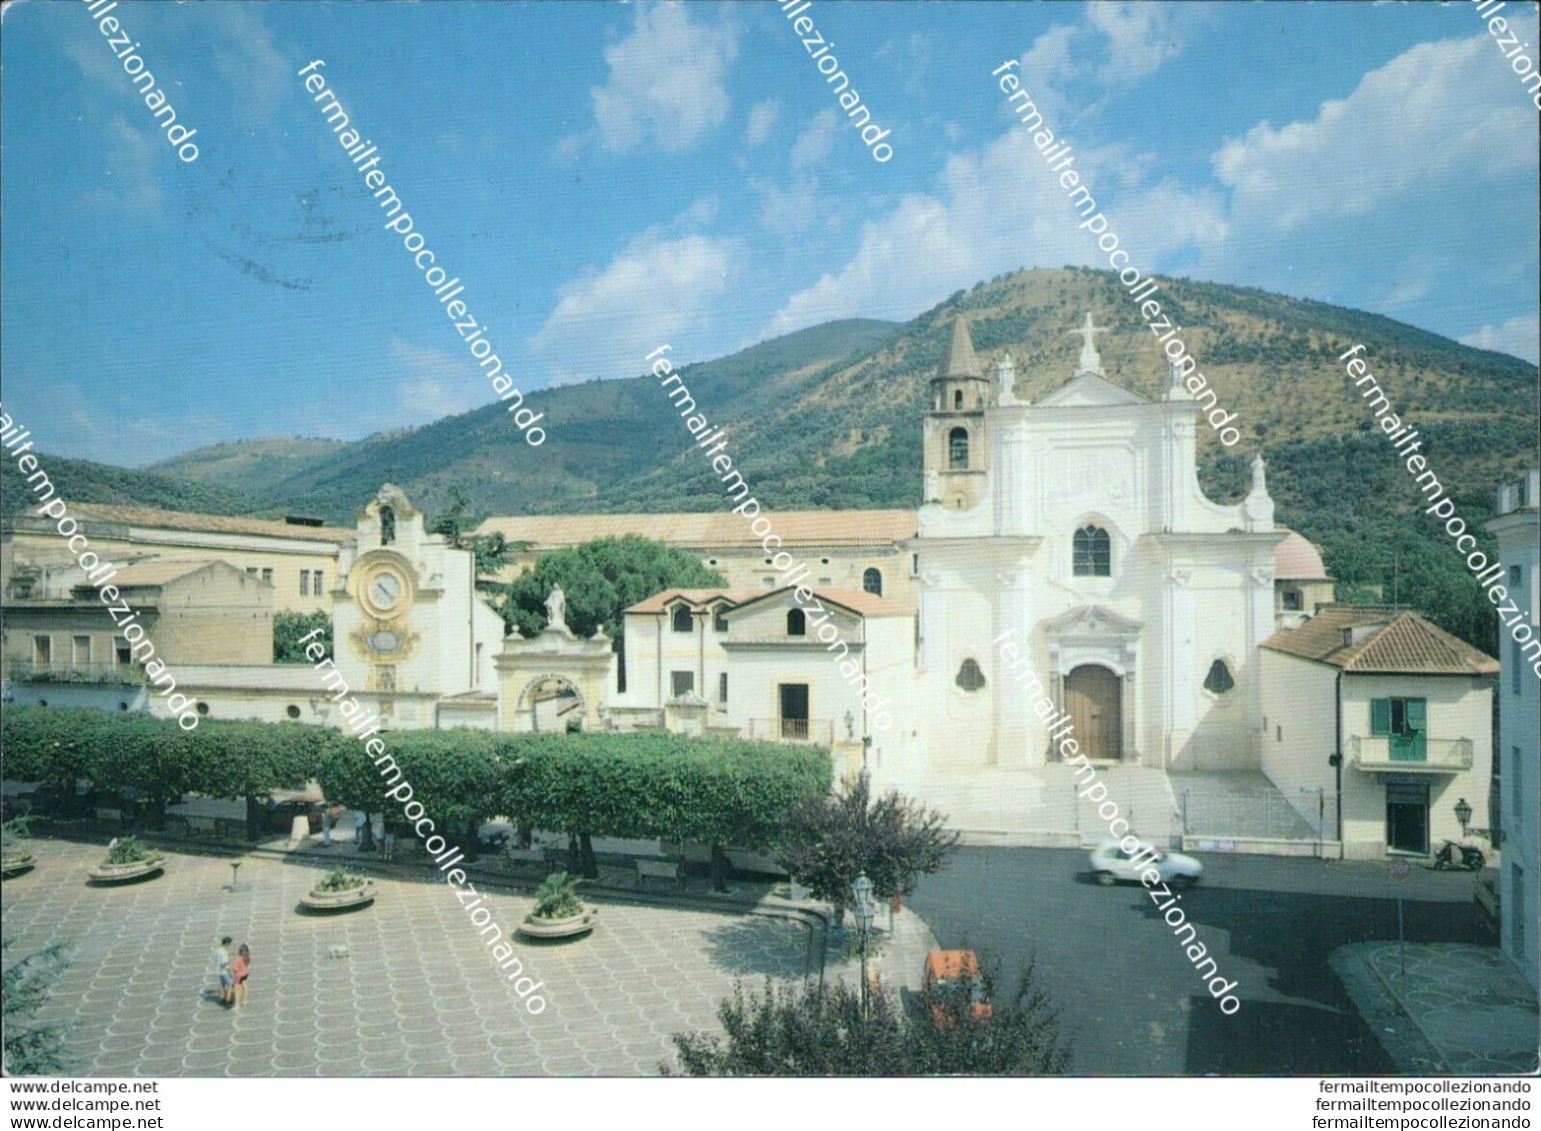 Bl71 Cartolina S.maria A Vico Valle Di Suessola Provincia Di Caserta - Caserta